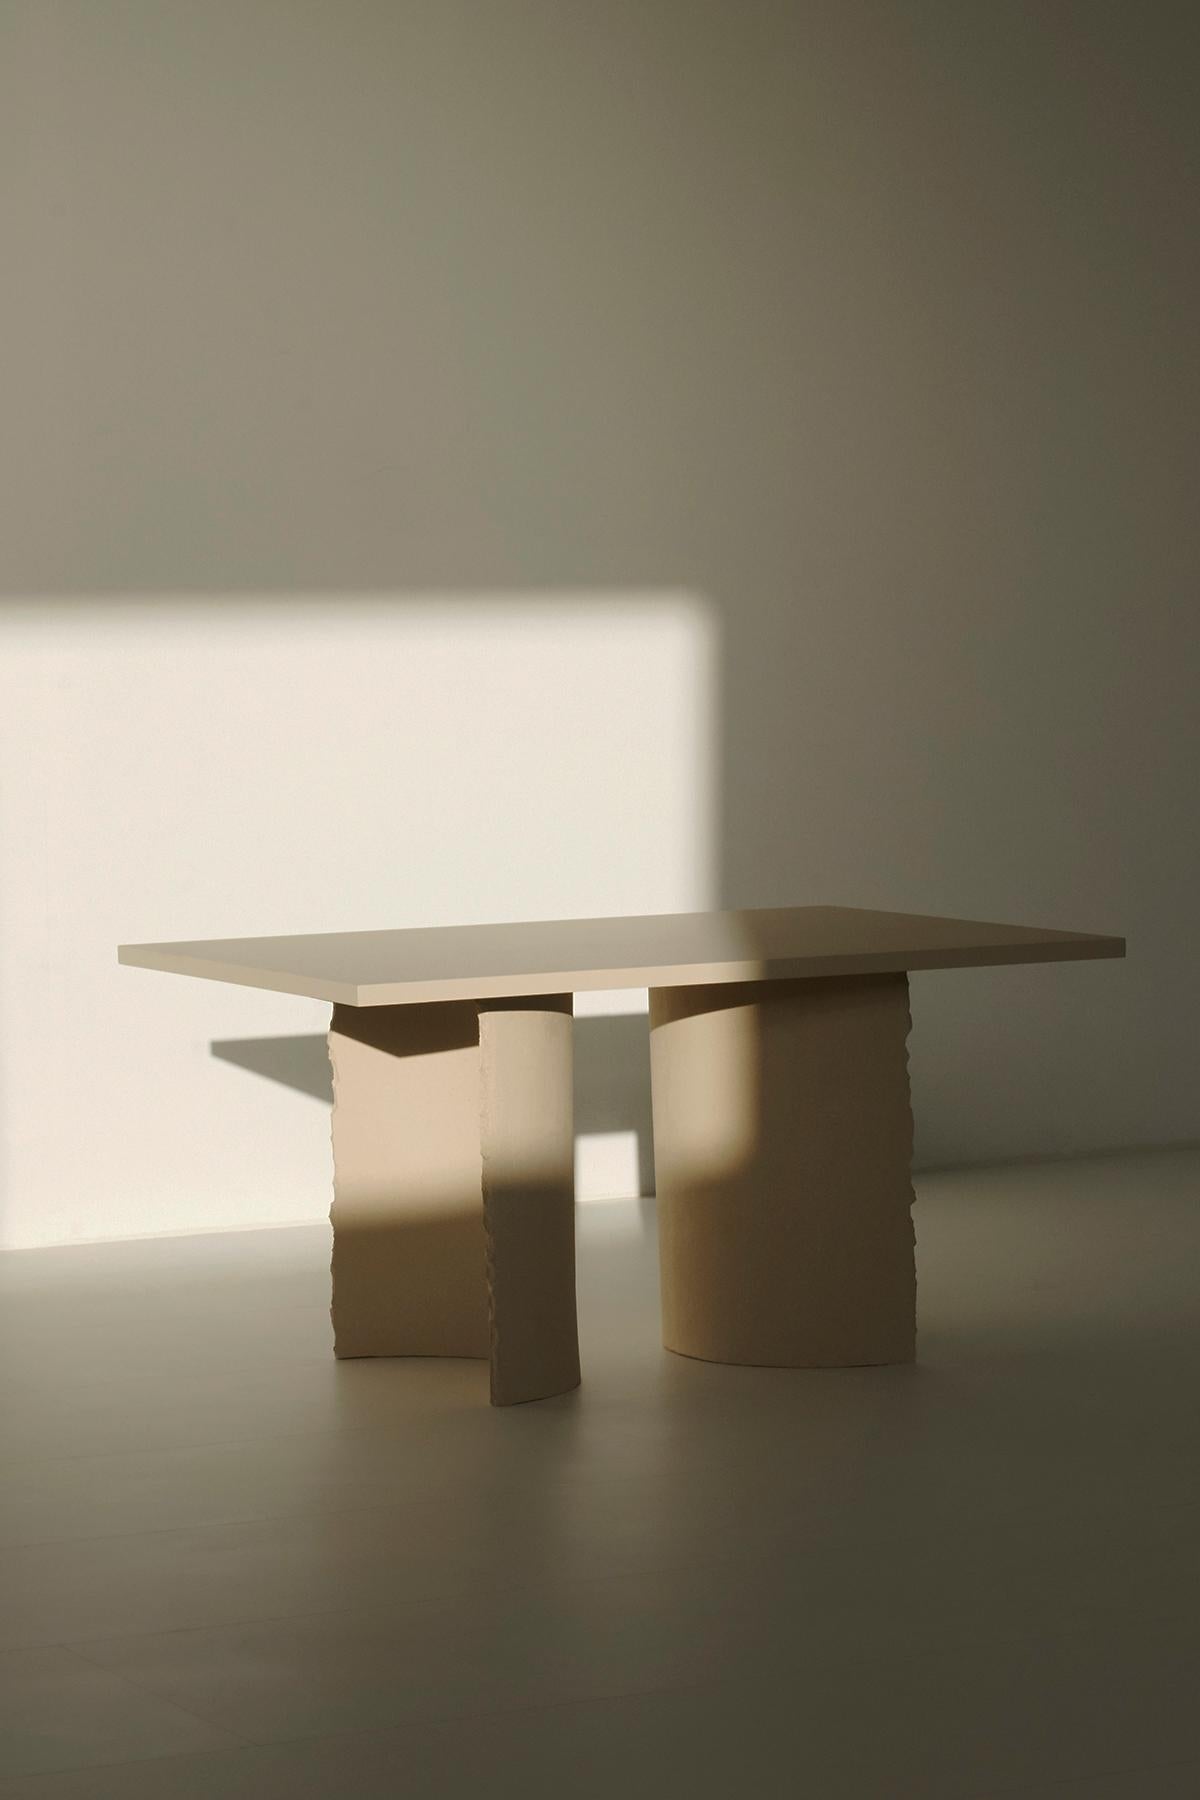 Common Effort Hand-Sculpted Black Clay Table by Sanna Völker 2